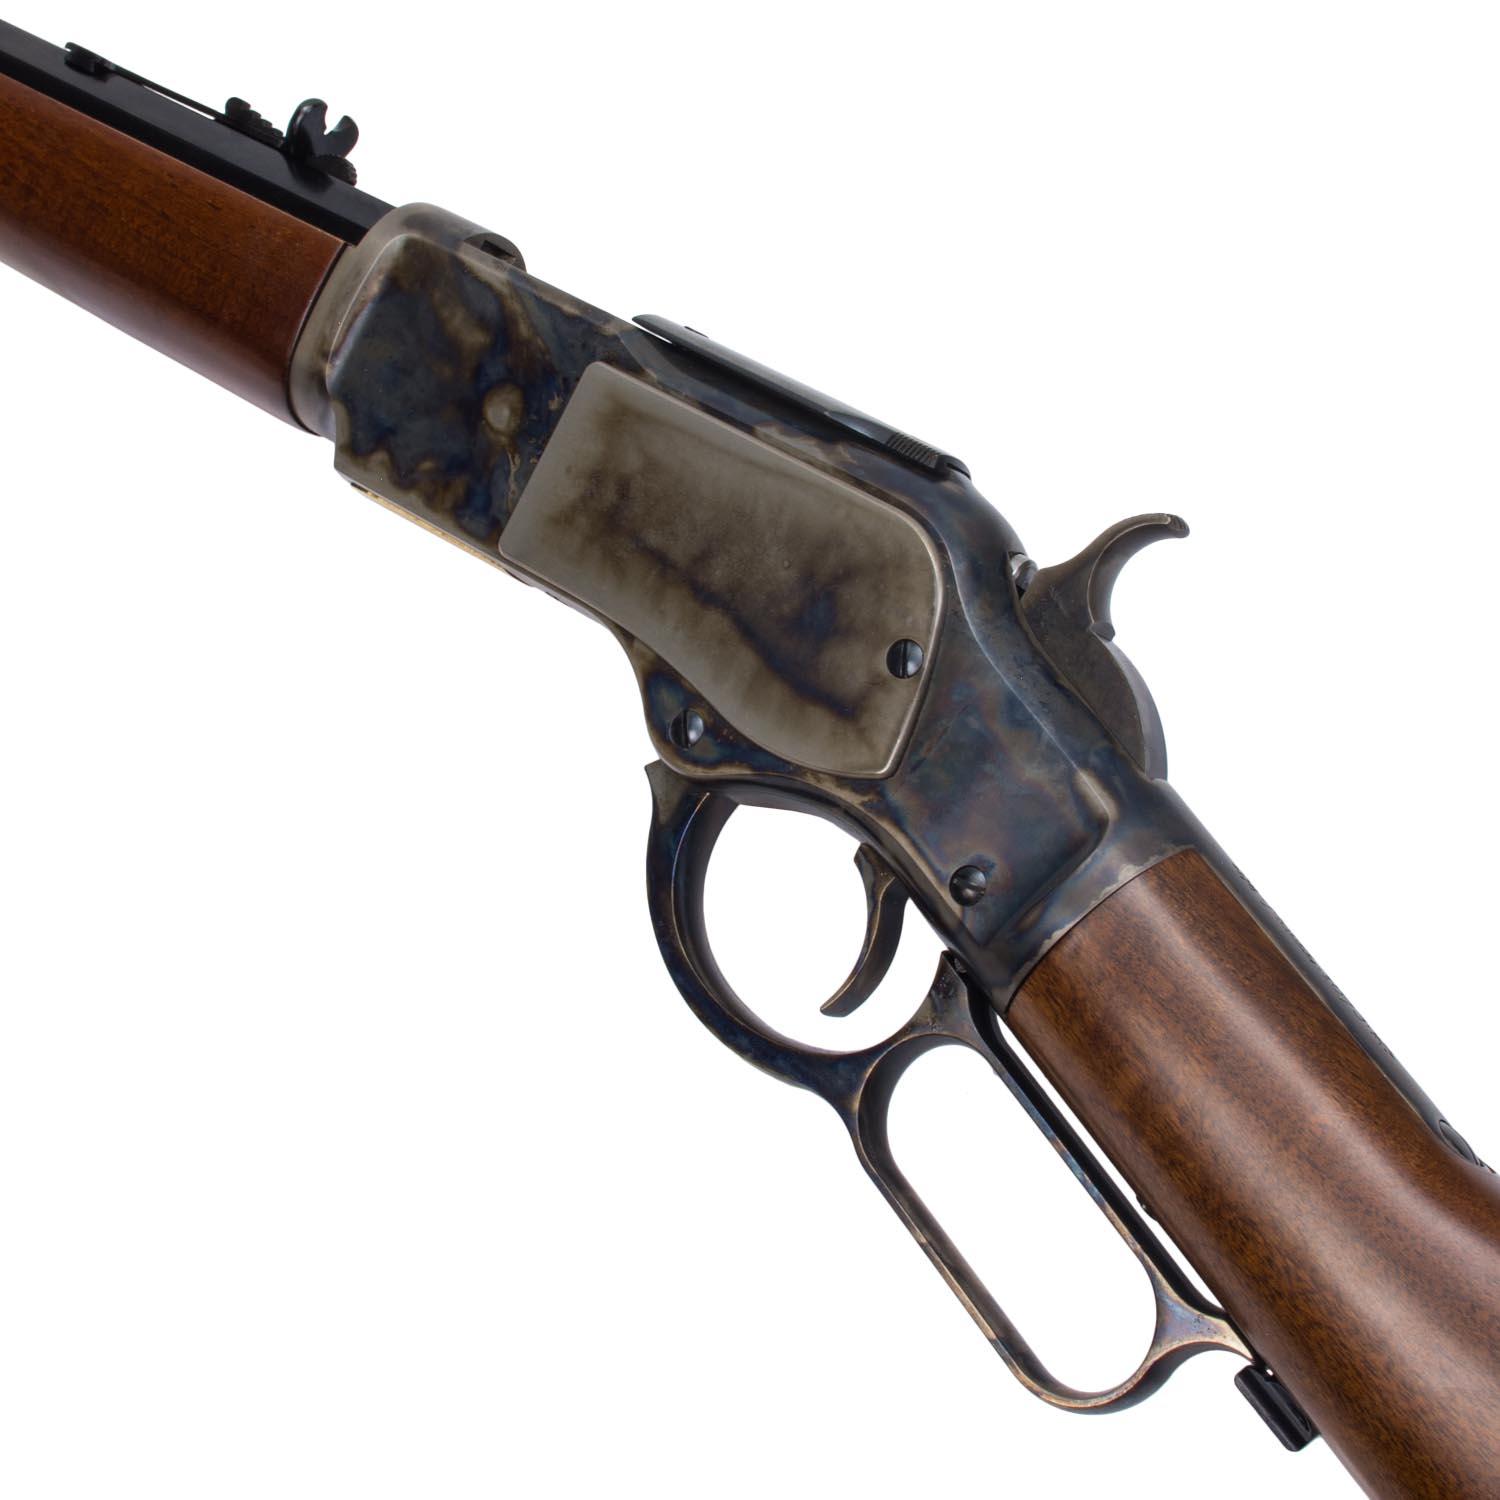 uberti 1873 rifle